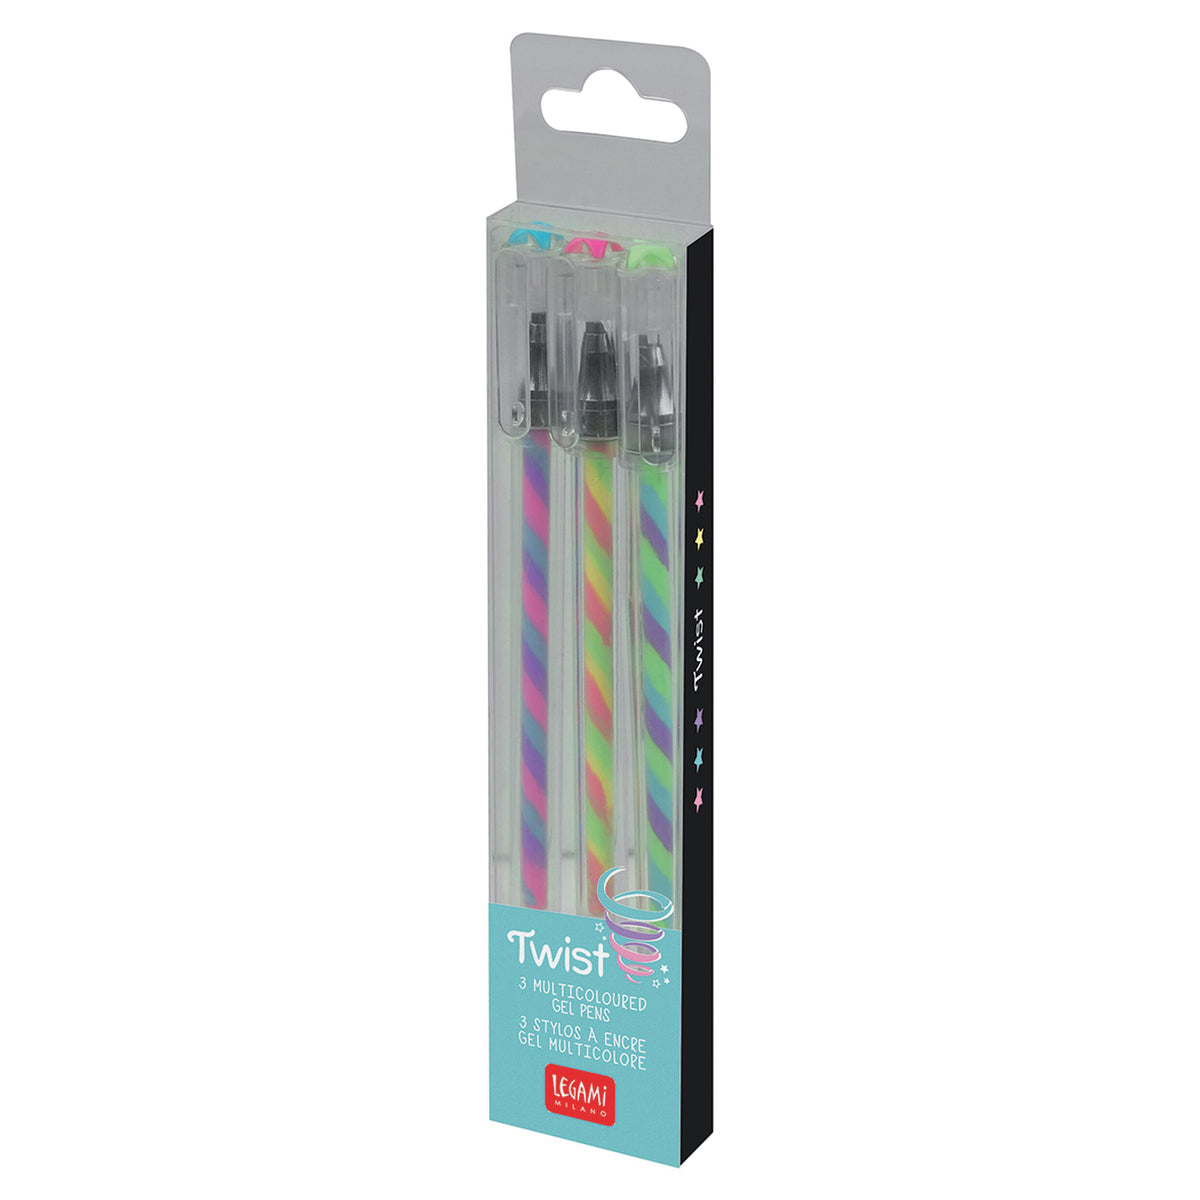 Twist Pen Multicoloured Gel Pen Set of 3